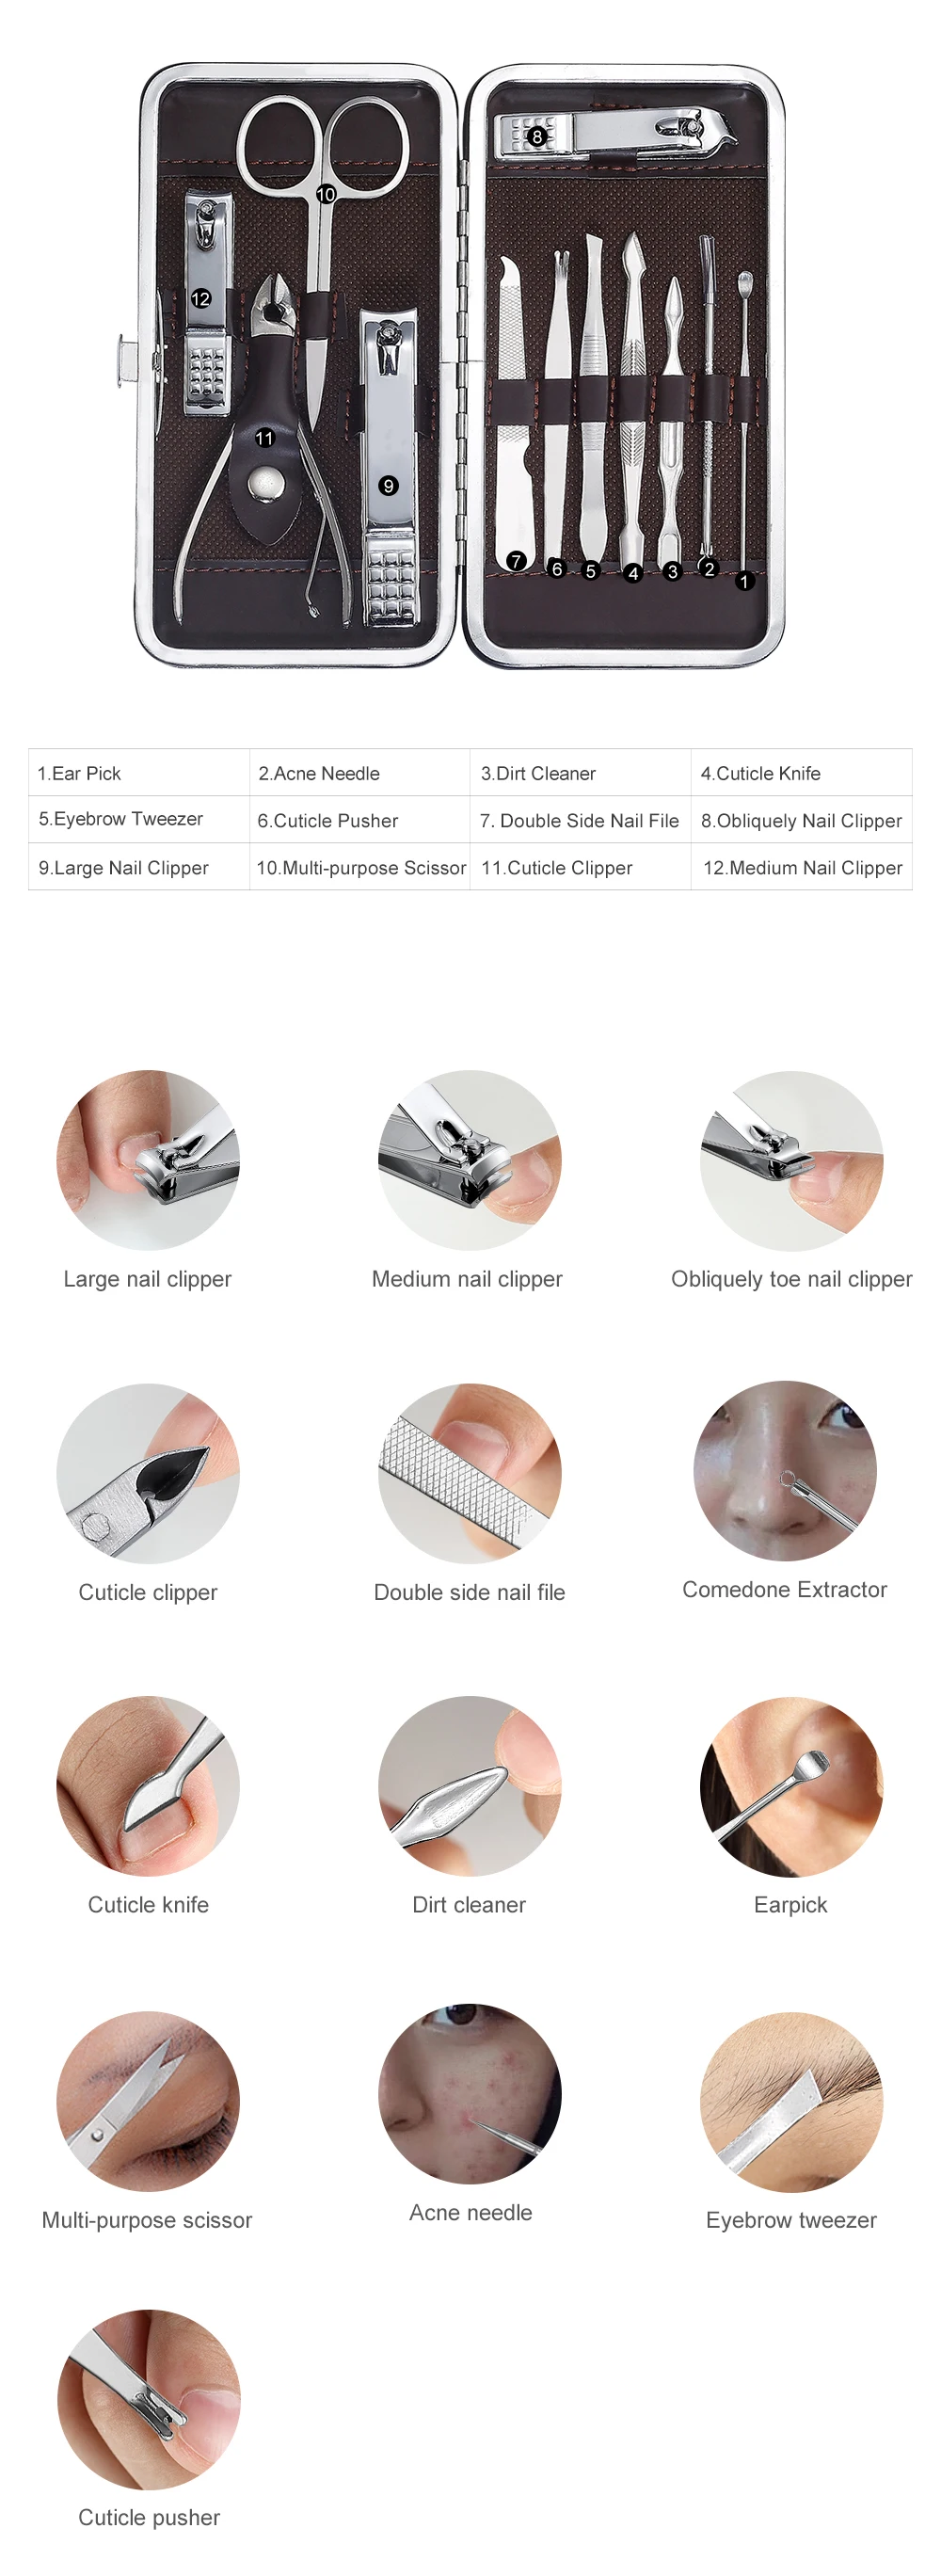 XYj маникюрный набор, кусачки для ногтей, набор из нержавеющей стали, Персональный Маникюр и педикюр, набор для путешествий и ухода, 12 в 1, набор инструментов для дизайна ногтей